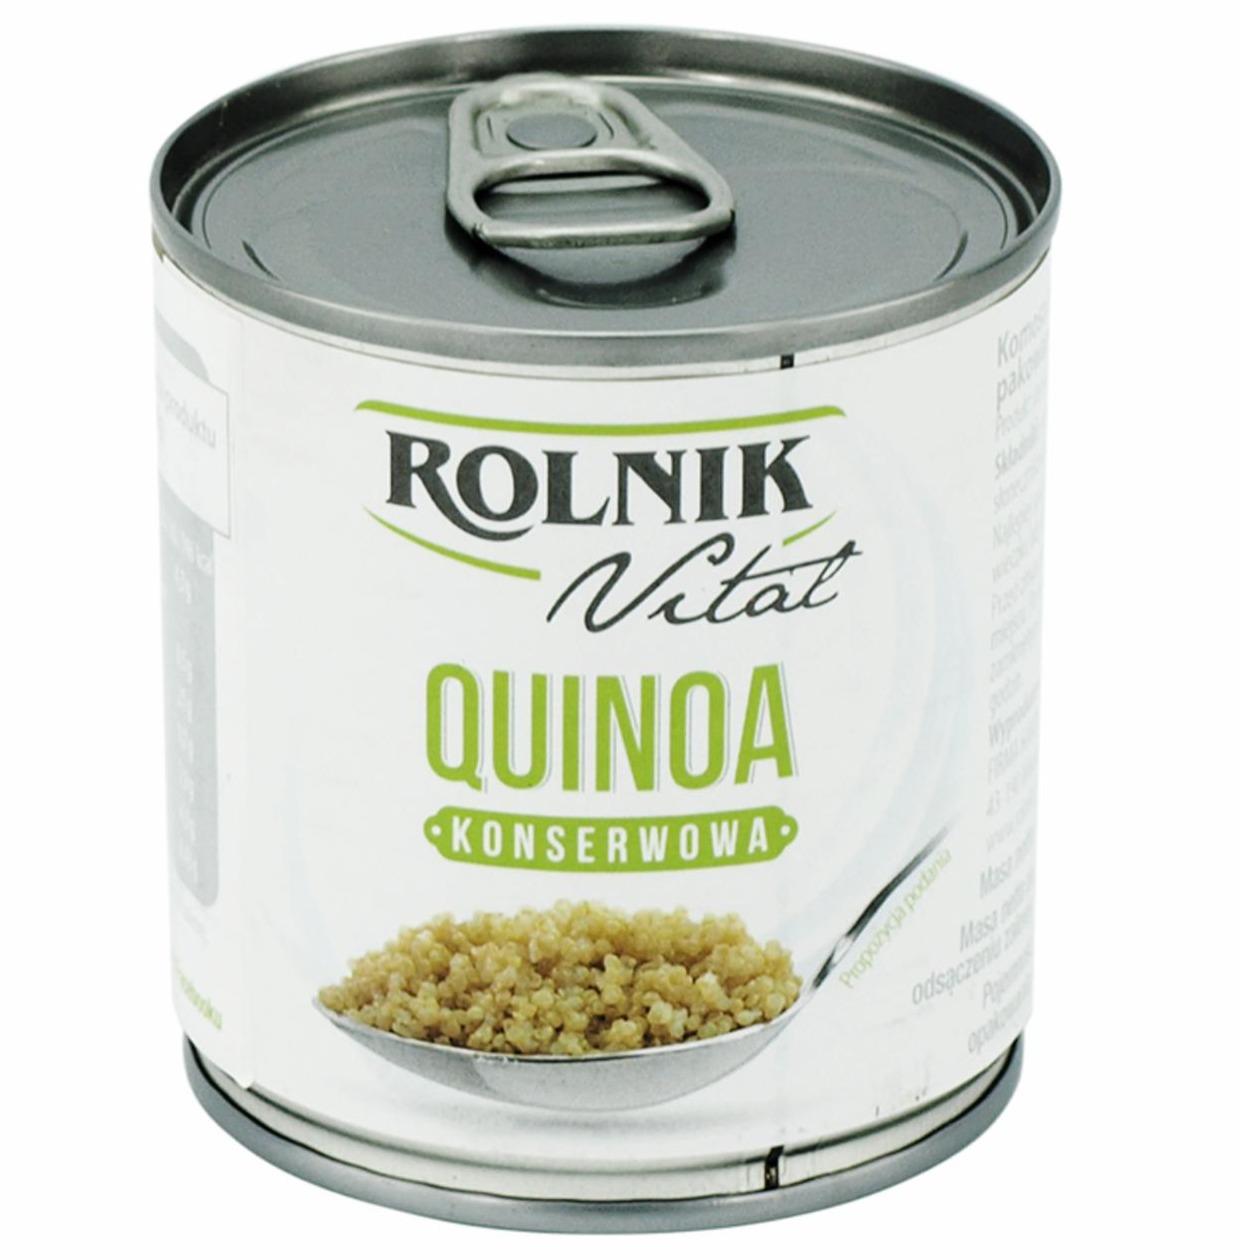 Zdjęcia - Vital Quinoa konserwowa Rolnik